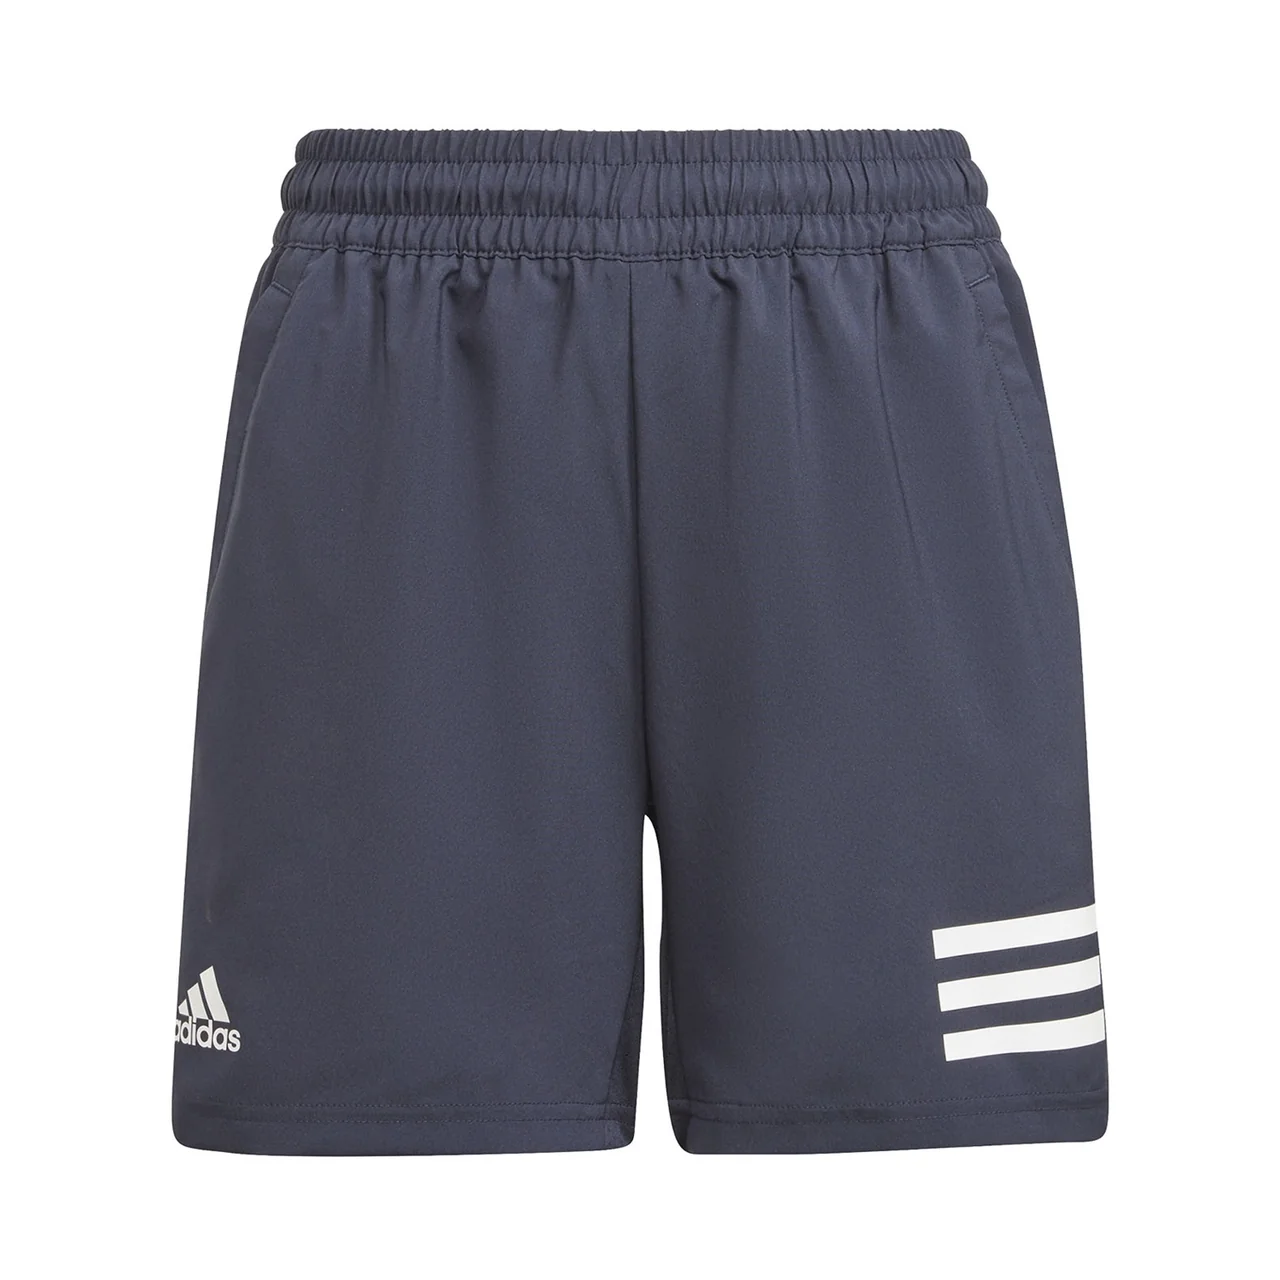 Adidas Boys Club 3-Stripe Shorts Navy